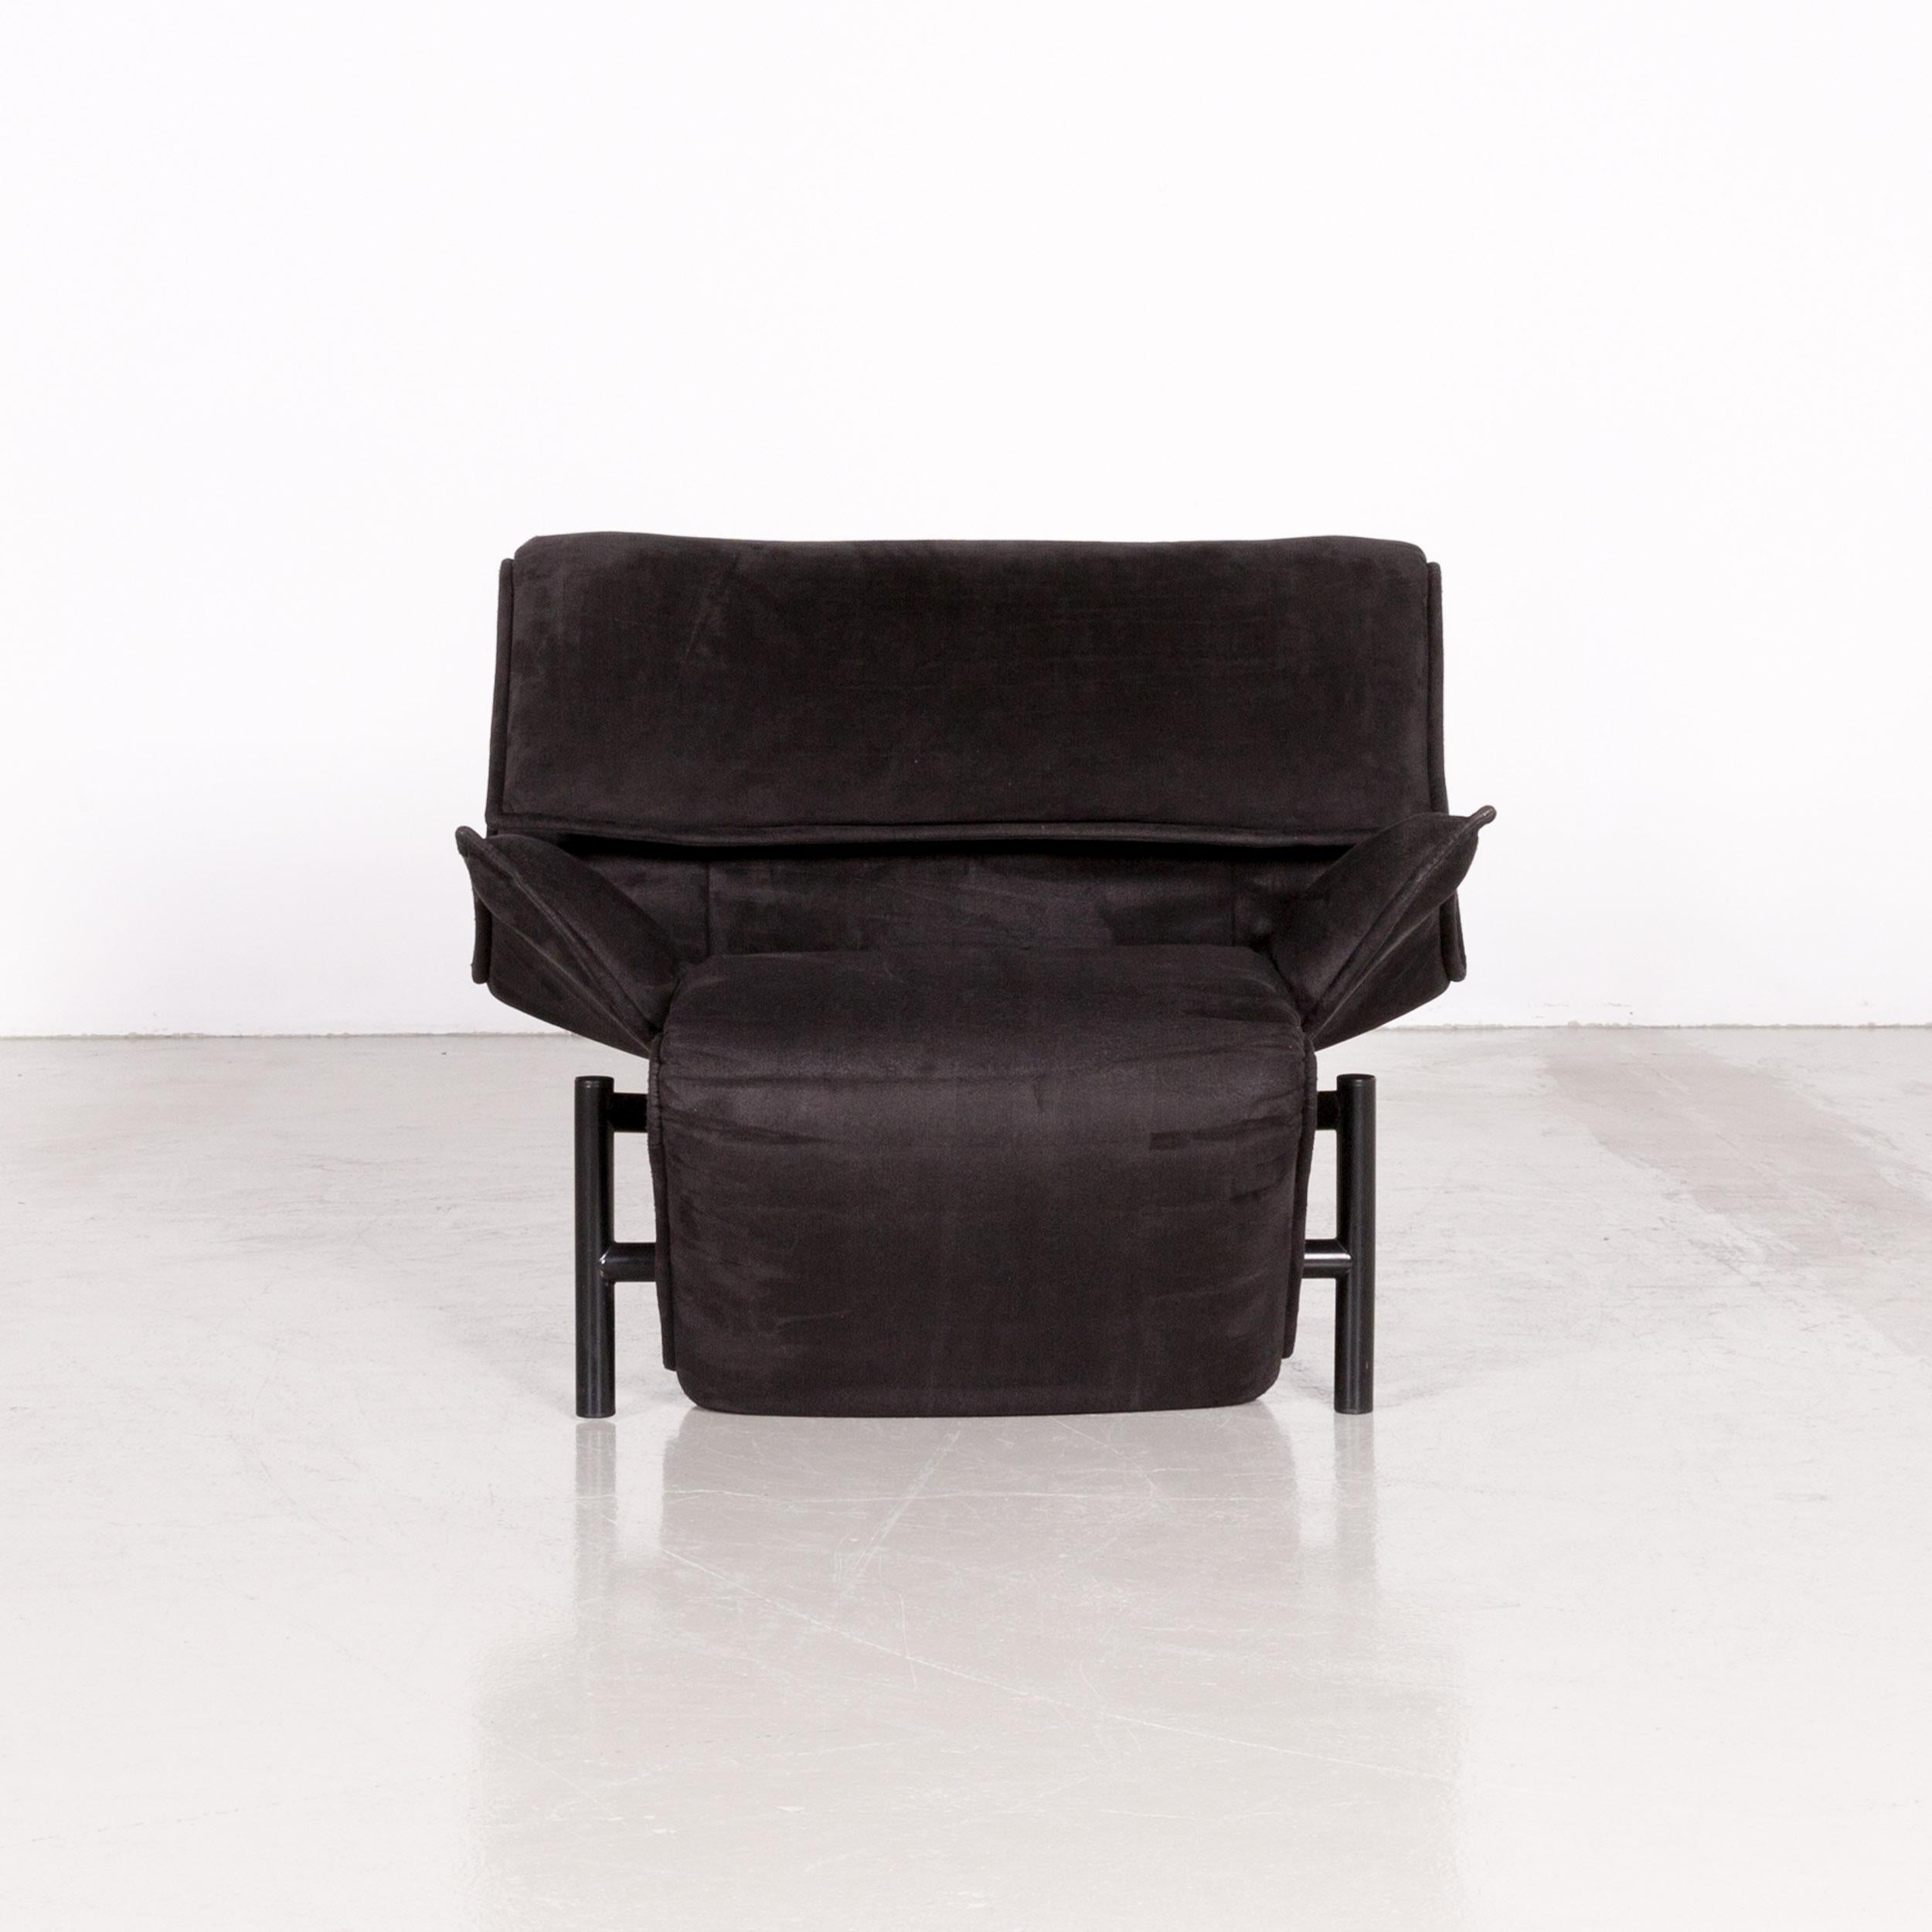 Cassina Veranda designer fabric armchair in black recliner function Alcantara.